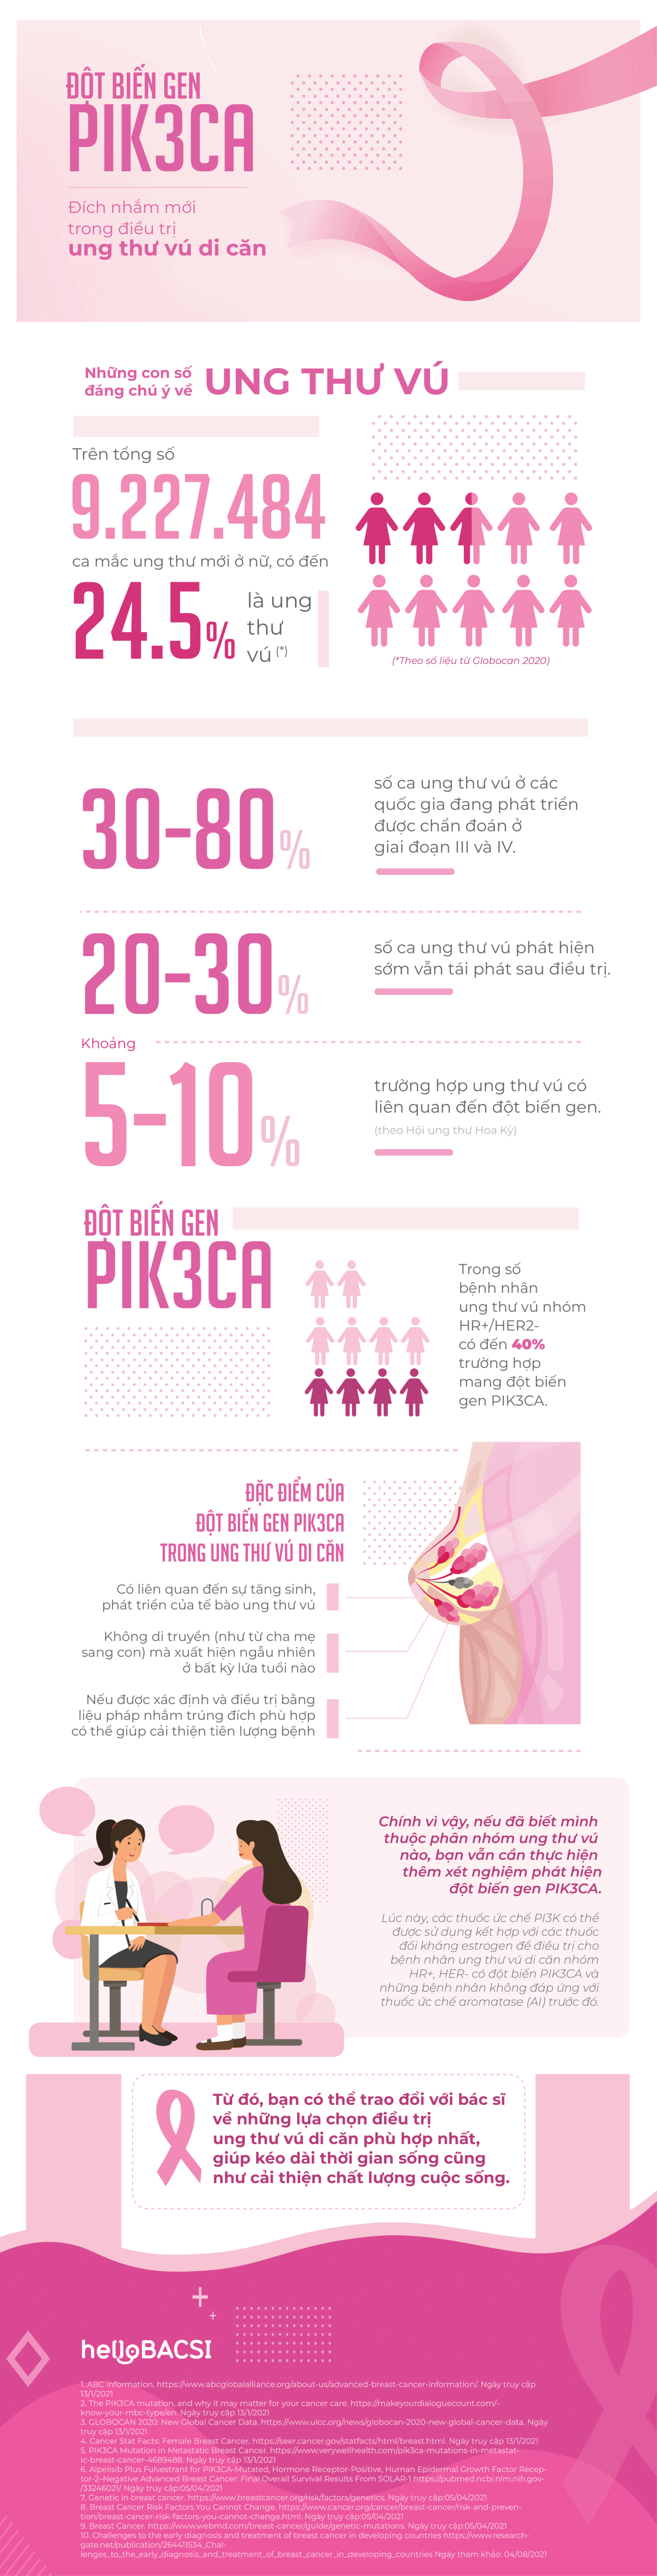 Đột biến gen PIK3CA trong ung thư vú di căn